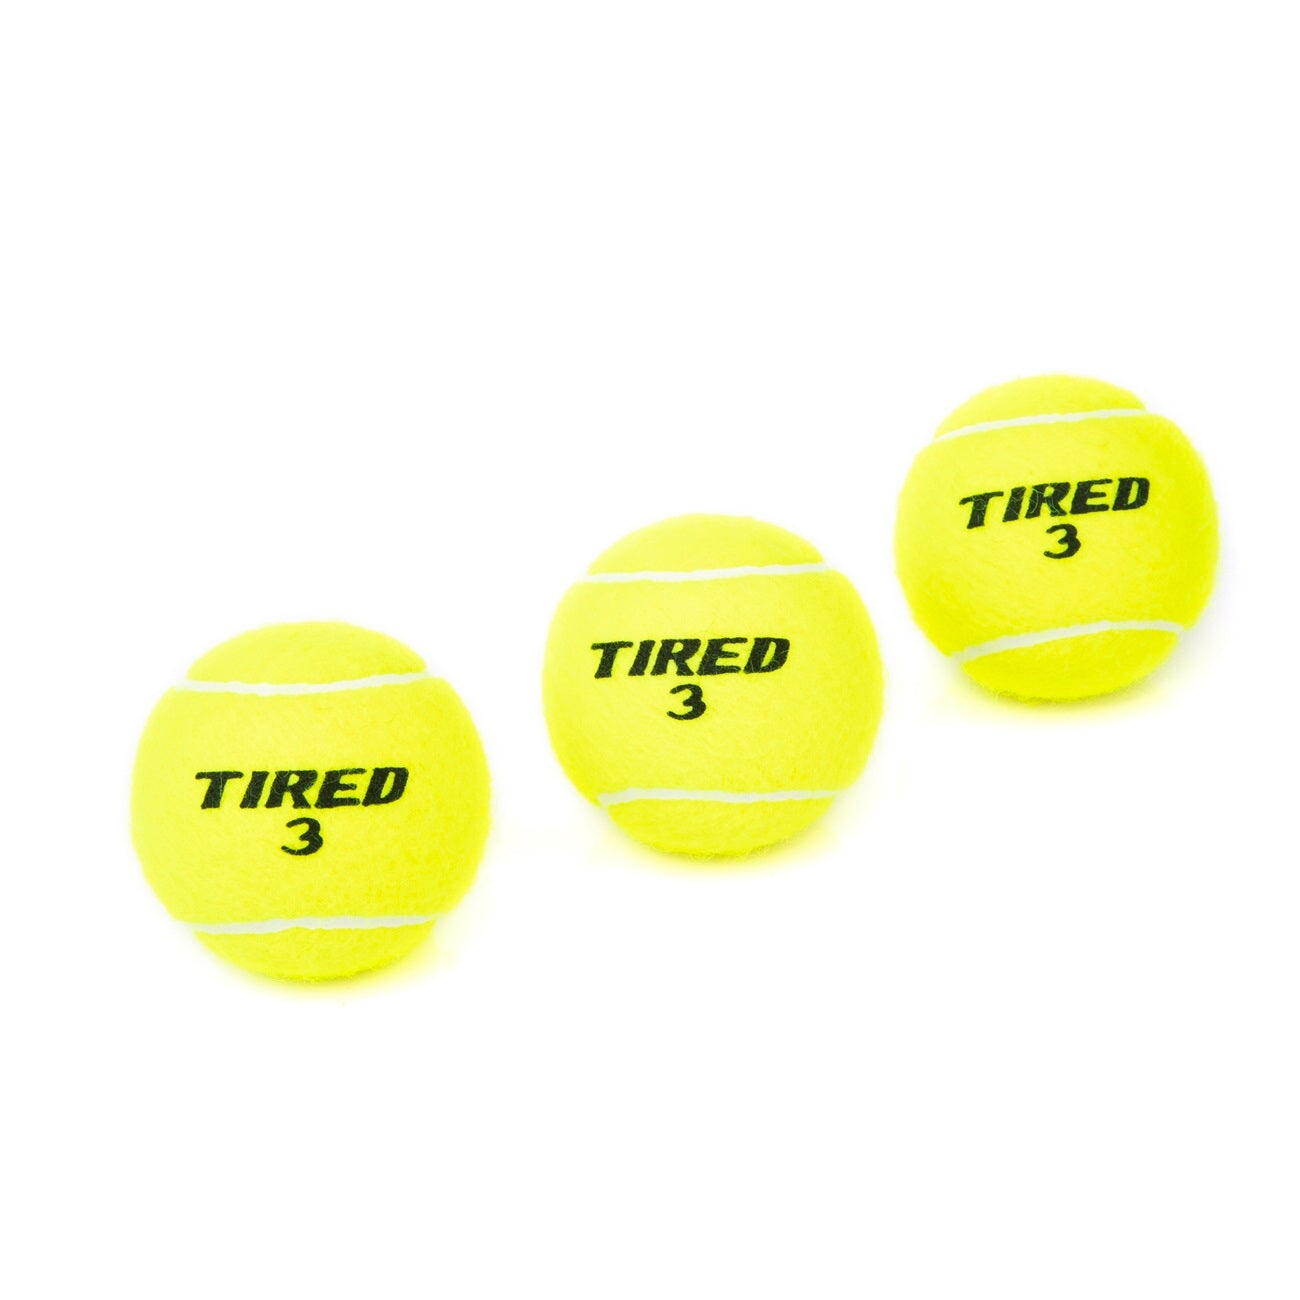 Tired 3 Ball Pack Tennisbälle Tennisbälle Tired 